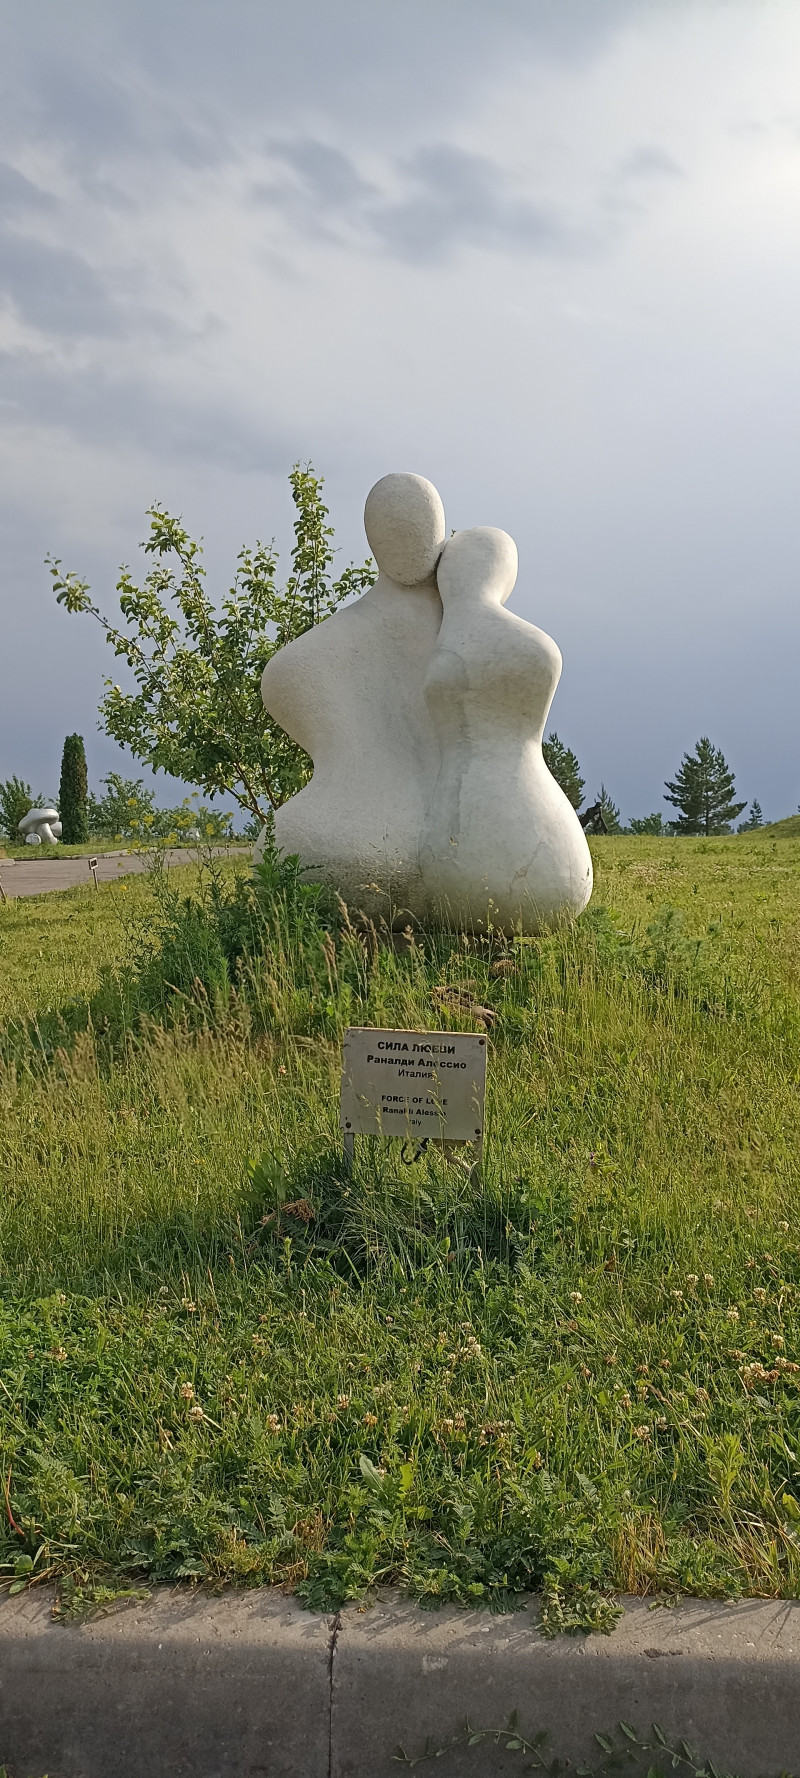 Парк современного искусства "Легенда"